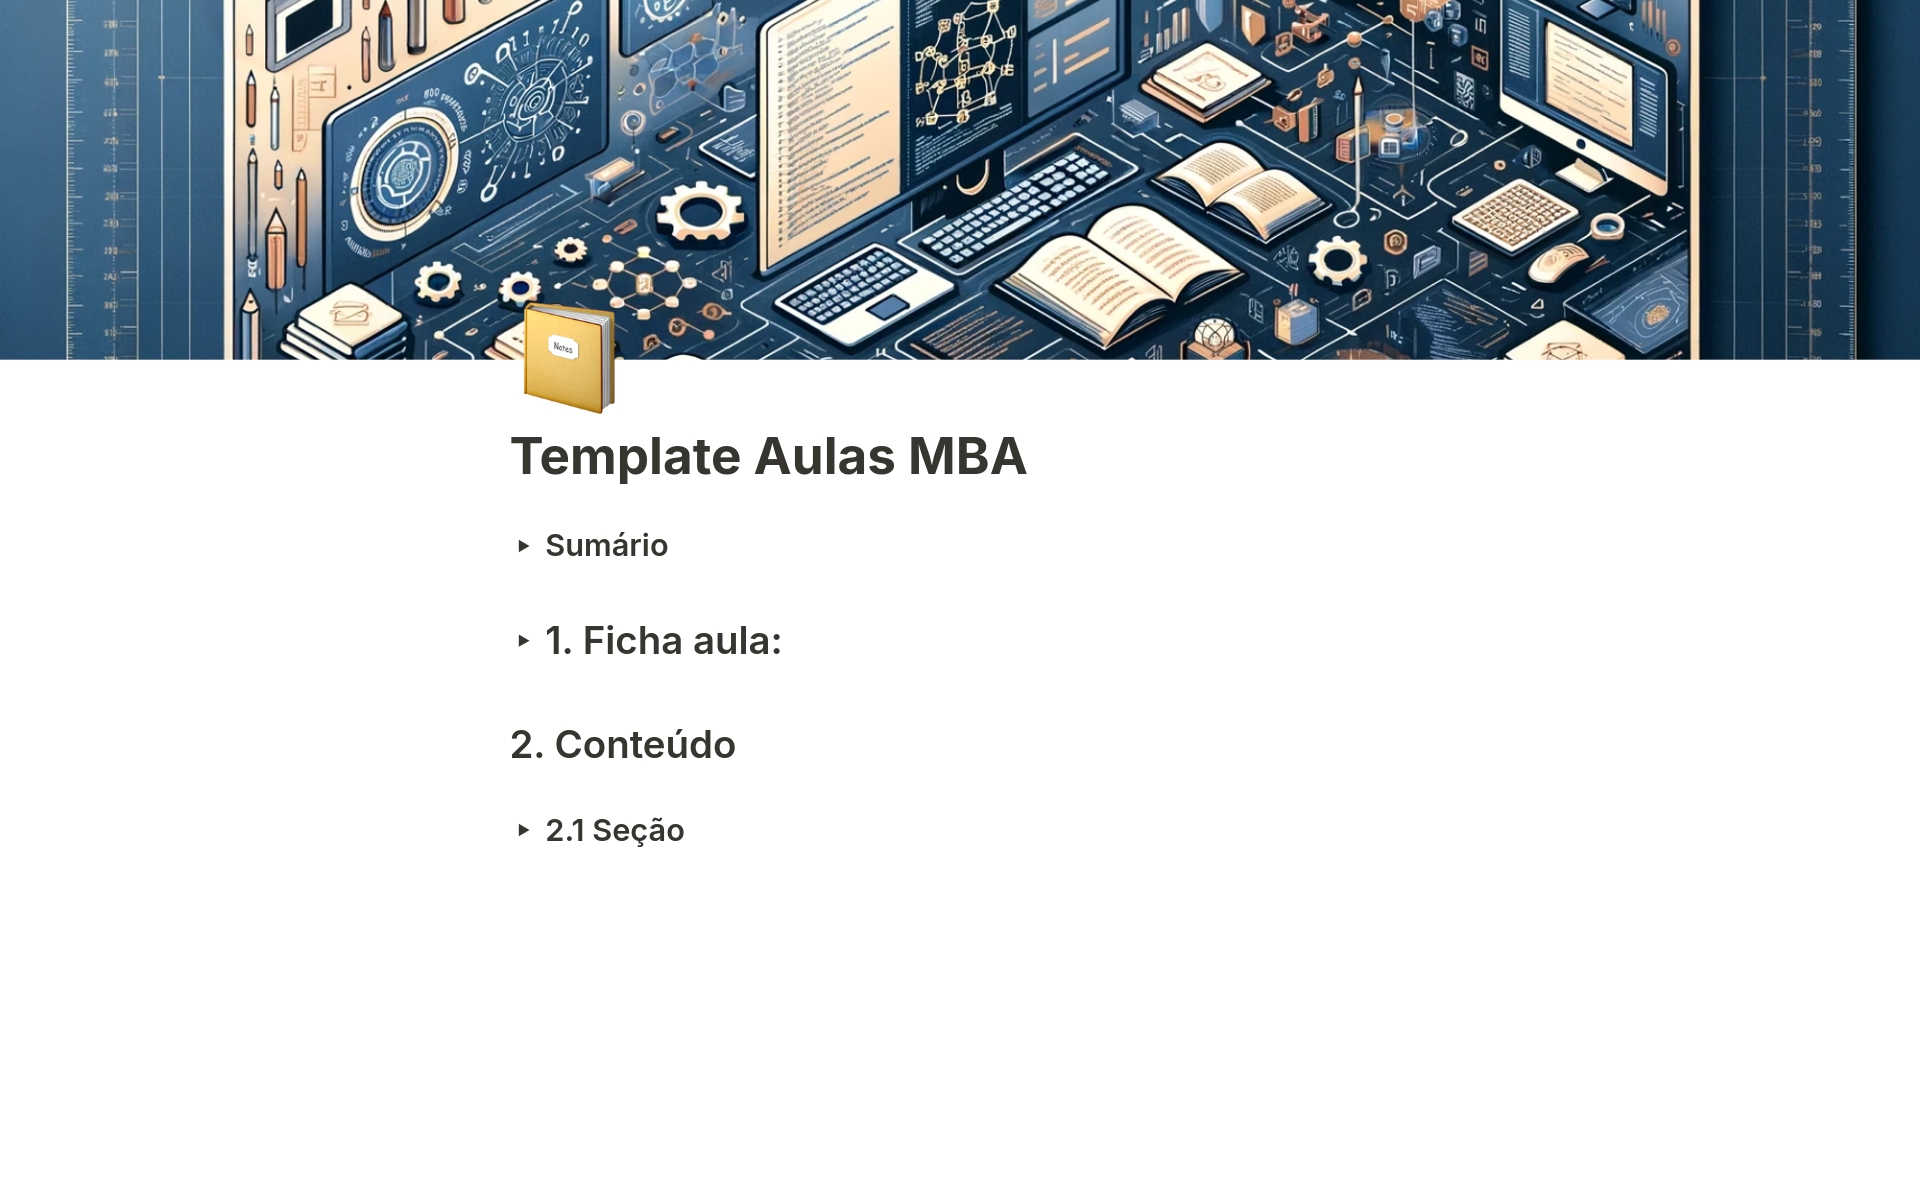 Esse é um template muito simples destinado a estudantes de MBA.